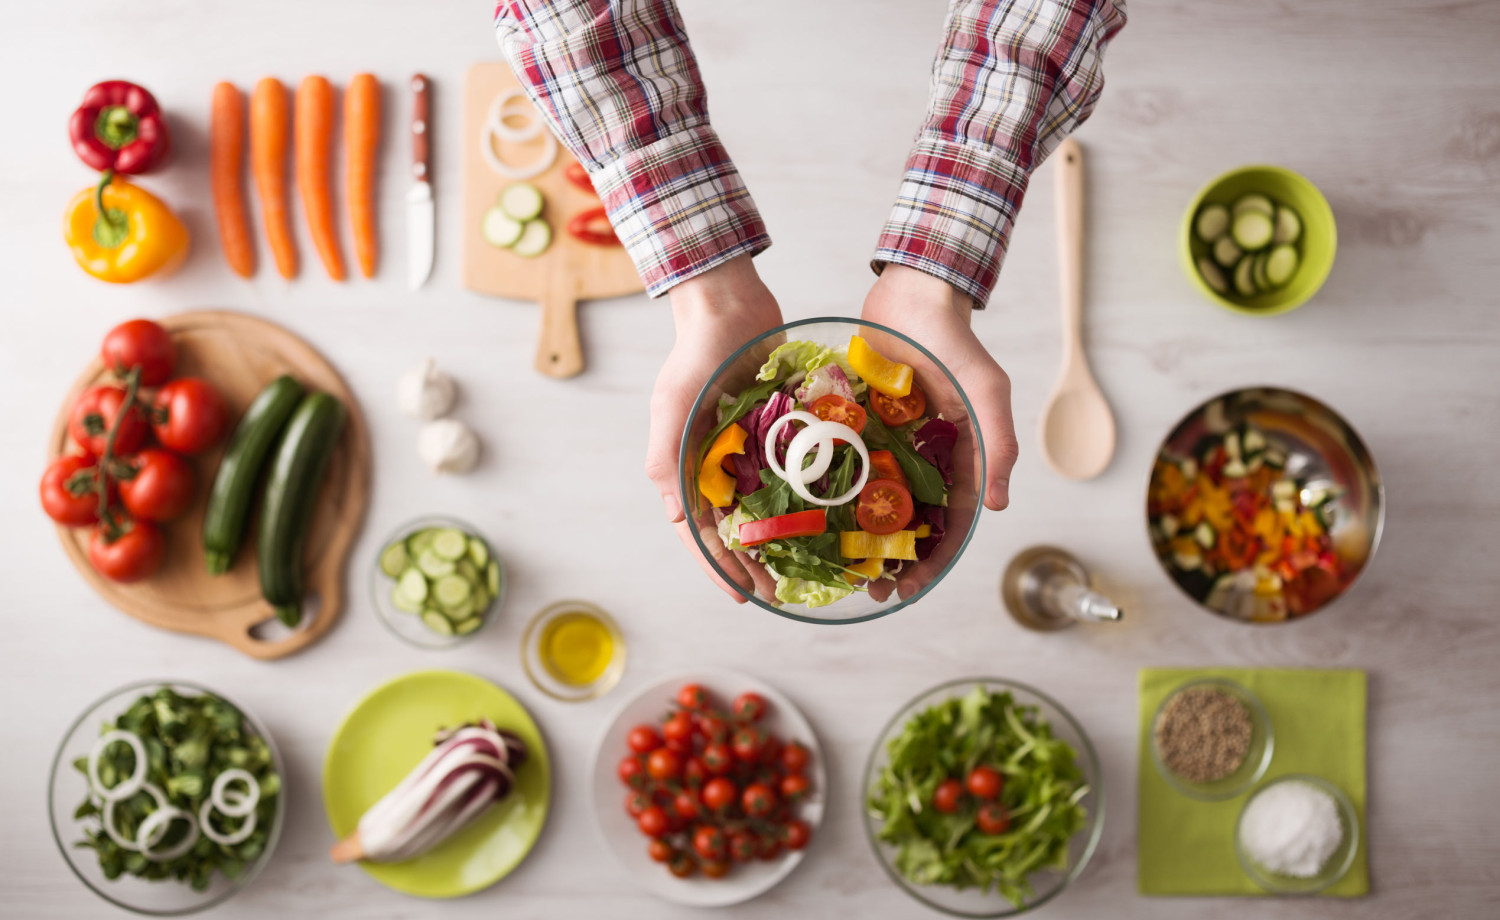 Apprenez à composer votre salade repas idéale – Le Carnet de bord